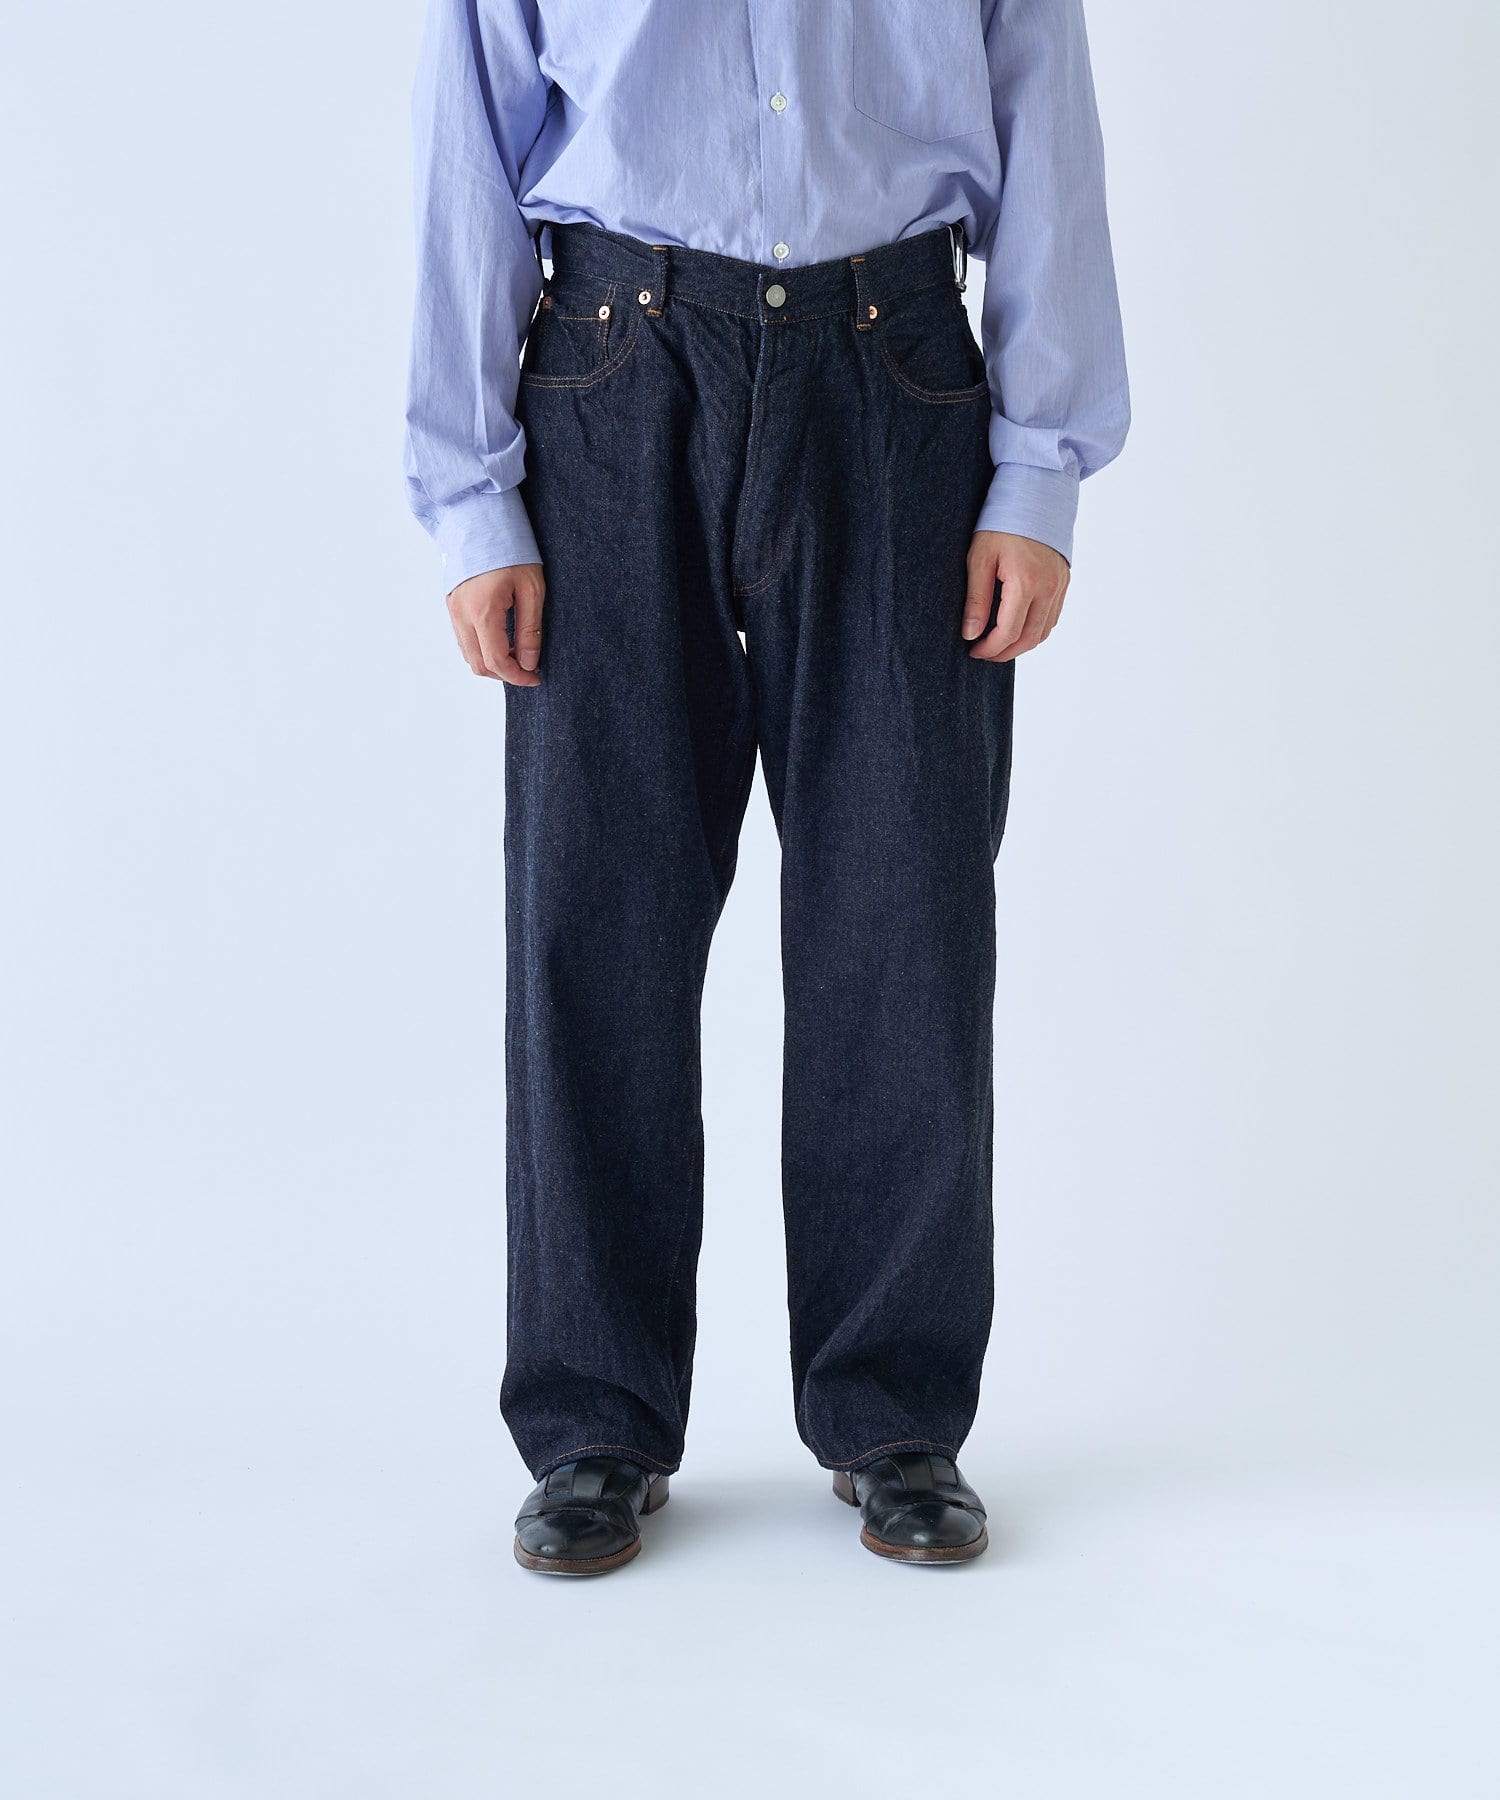 Blue 6Y Zara jeans KIDS FASHION Trousers Jean discount 85% 